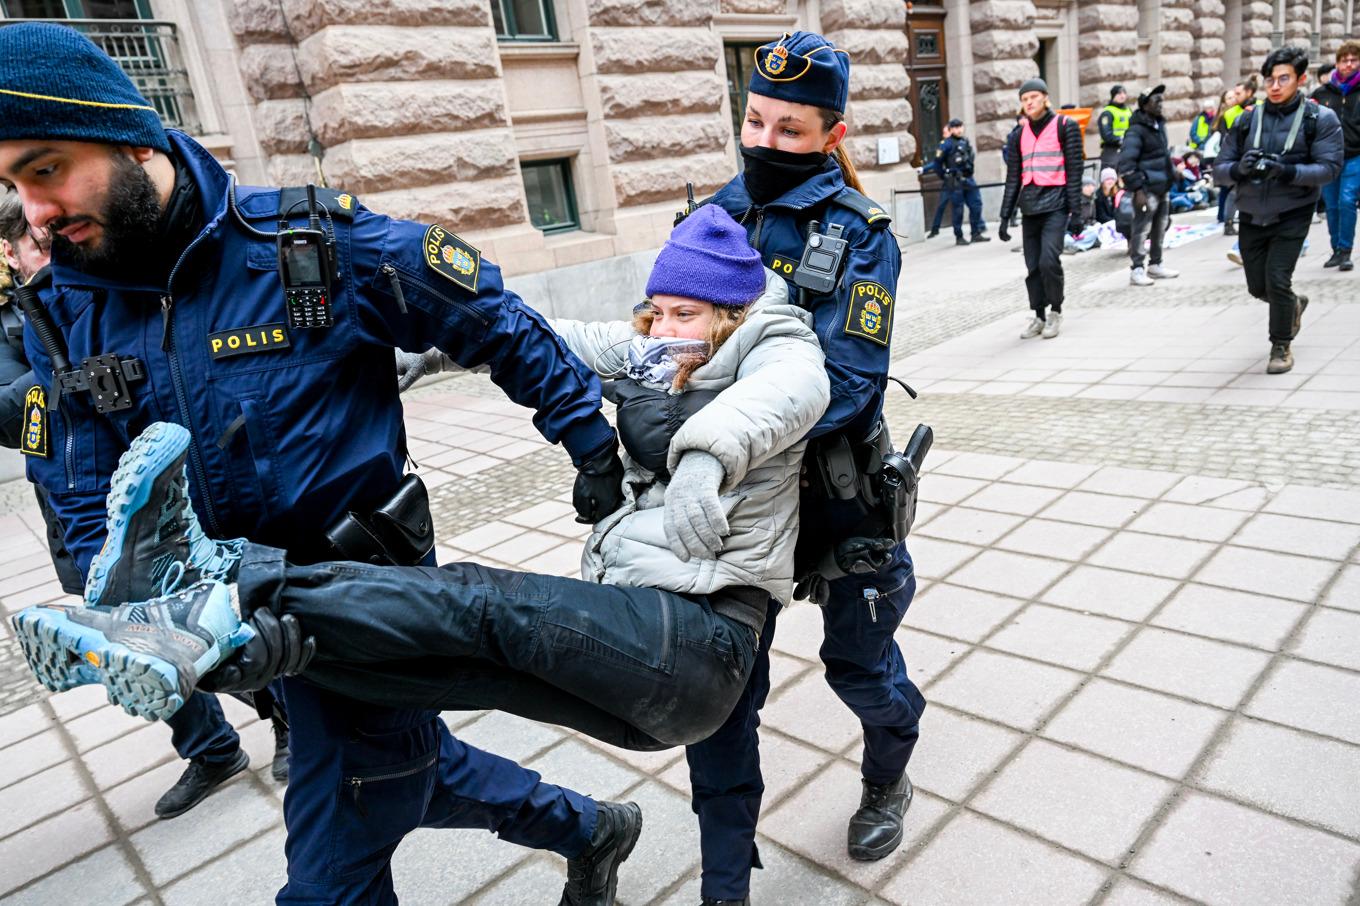 Greta Thunberg misstänks för brott. Arkivbild. Foto: Fredrik Sandberg/TT